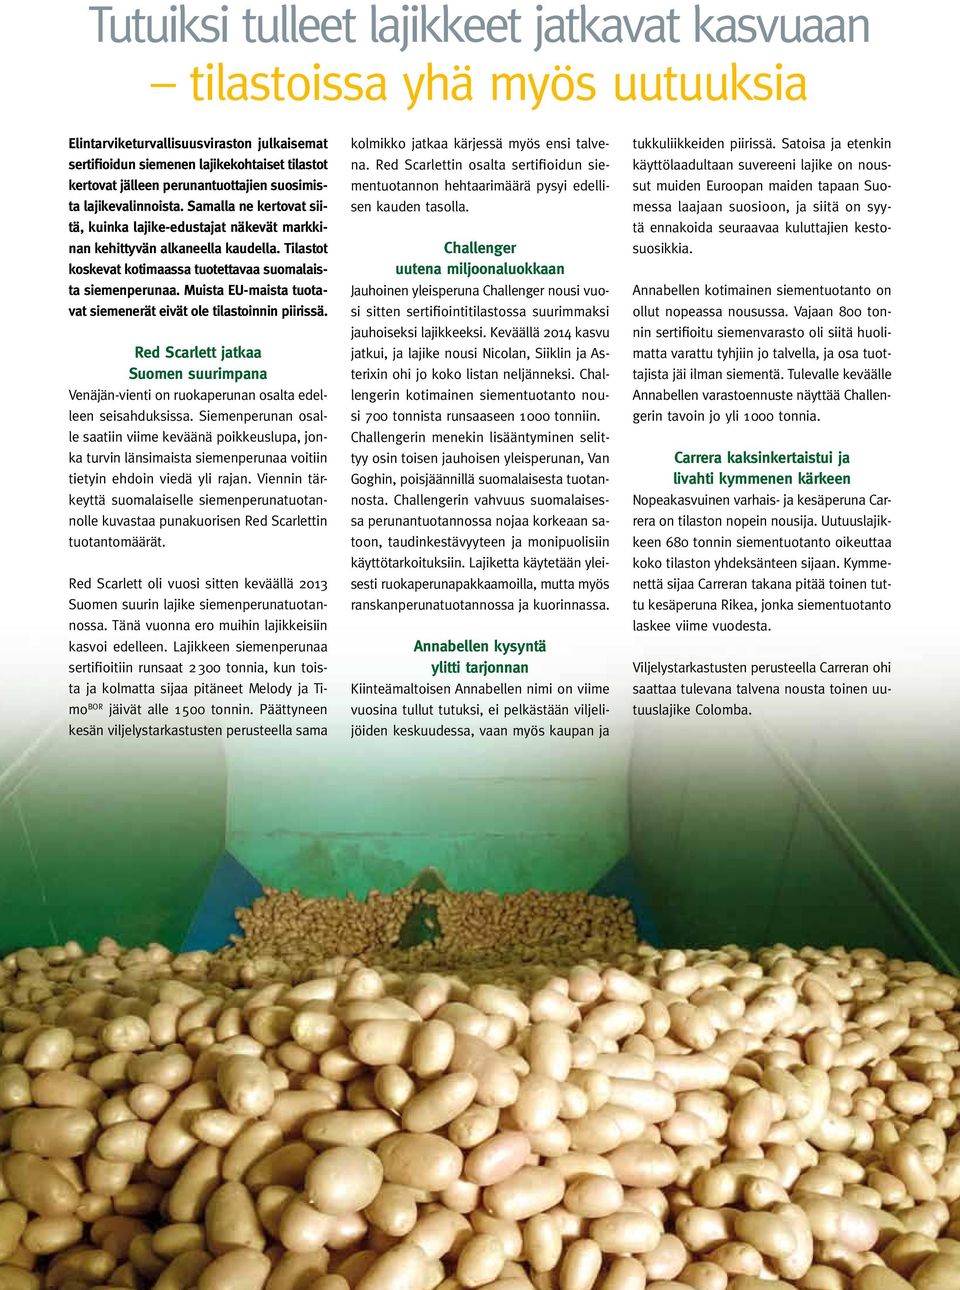 Tilastot koskevat kotimaassa tuotettavaa suomalaista siemenperunaa. Muista EU-maista tuotavat siemenerät eivät ole tilastoinnin piirissä.